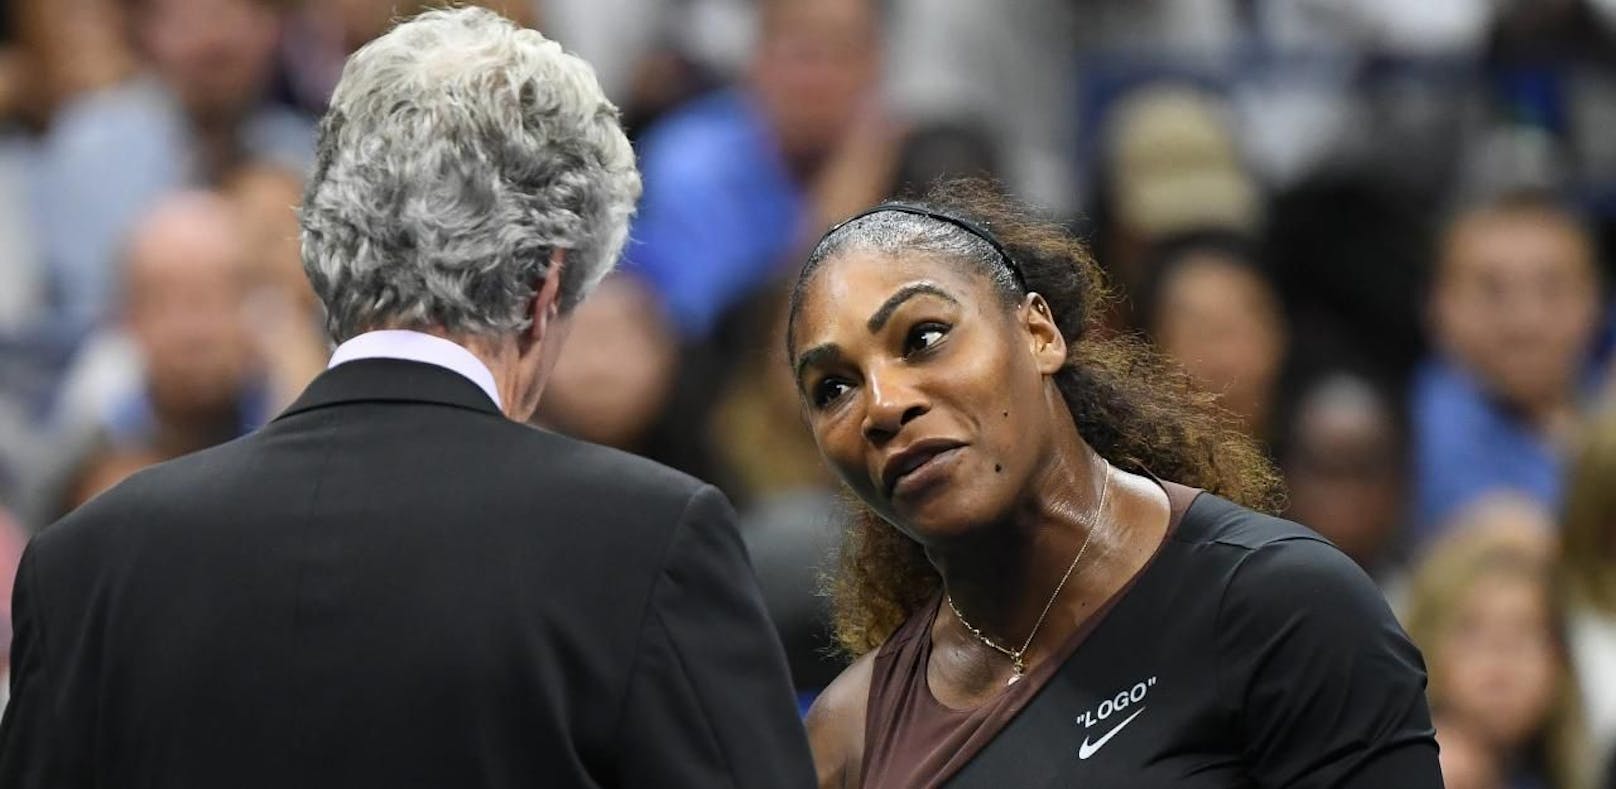 Williams schimpft Referee nach Ausraster "Sexist"